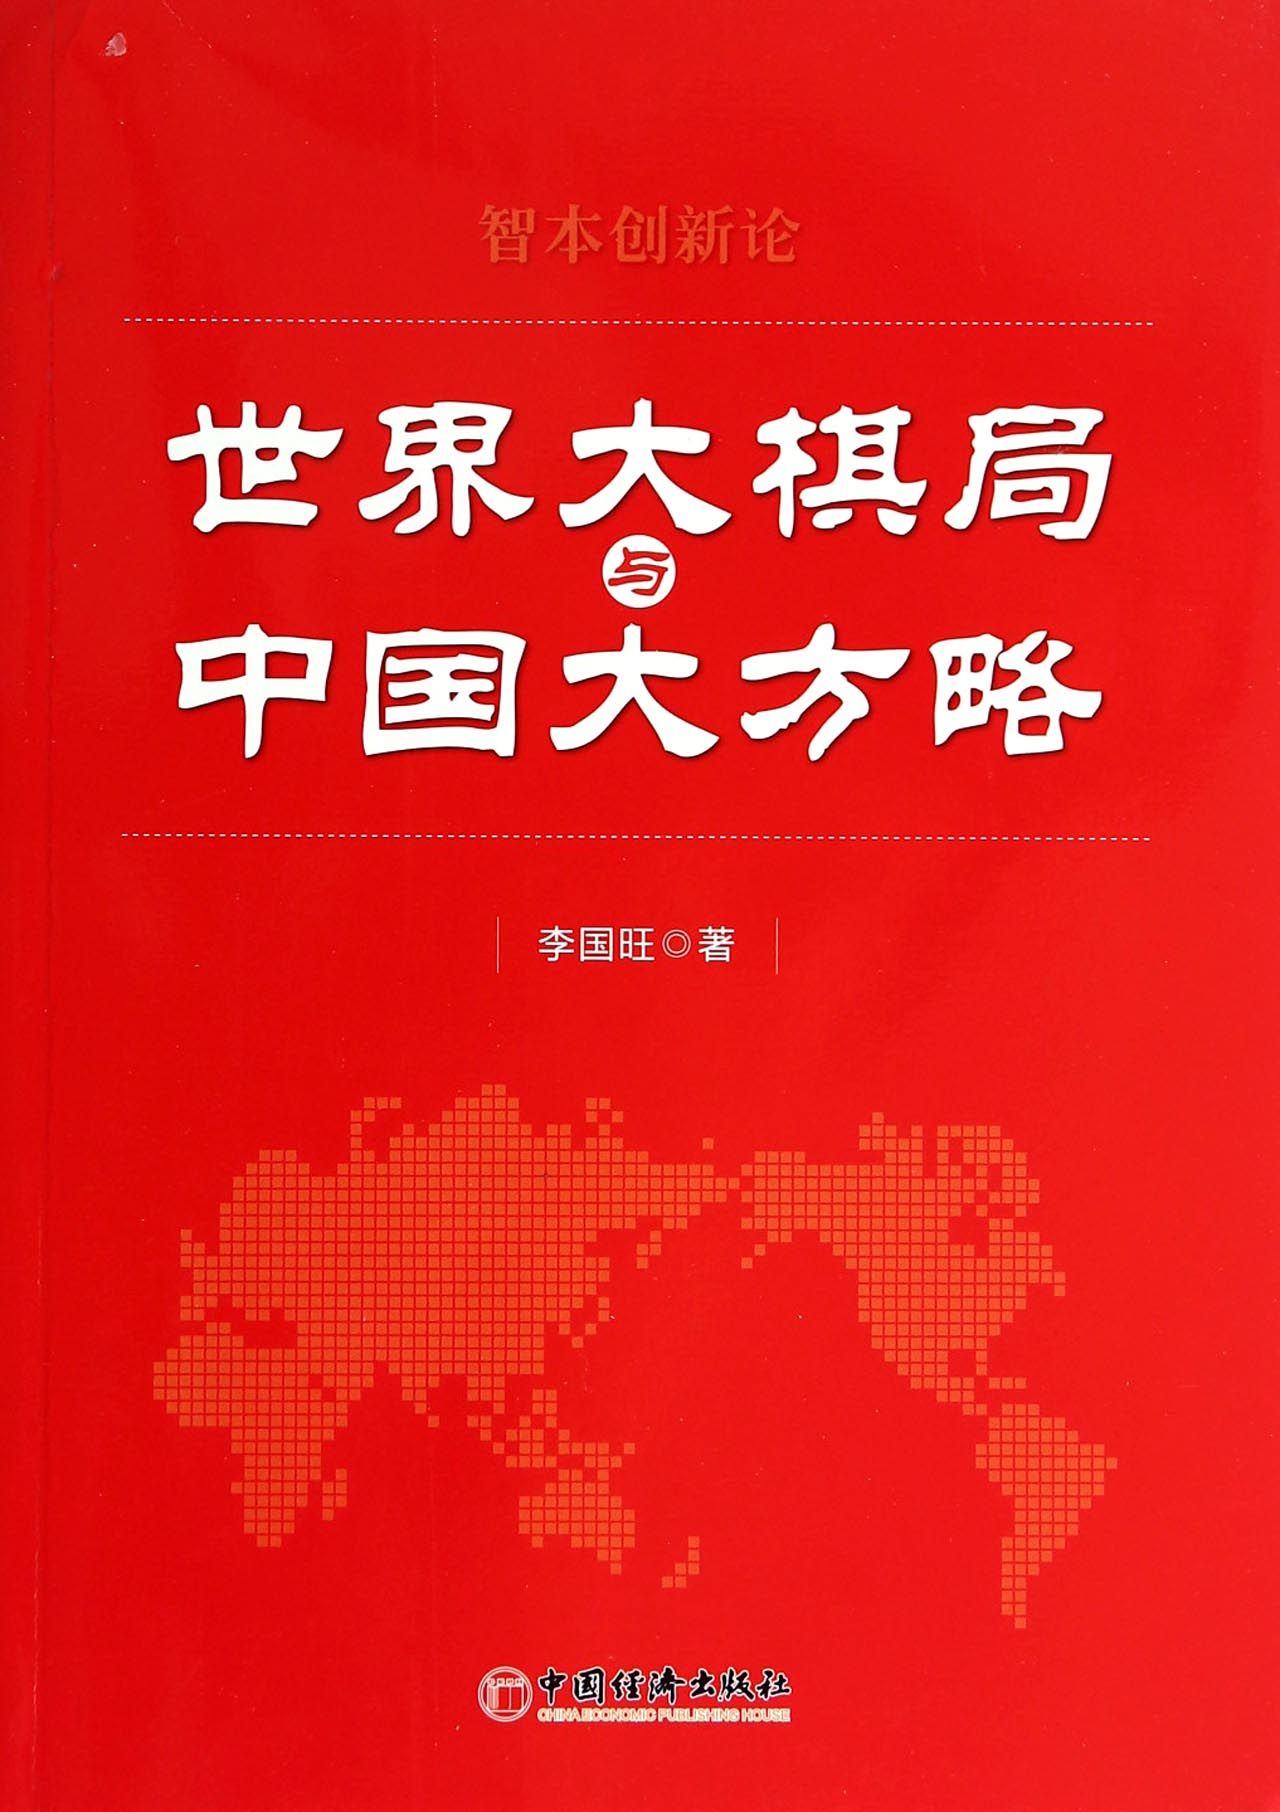 世界大棋局与中国大方略(智本创新论)截图